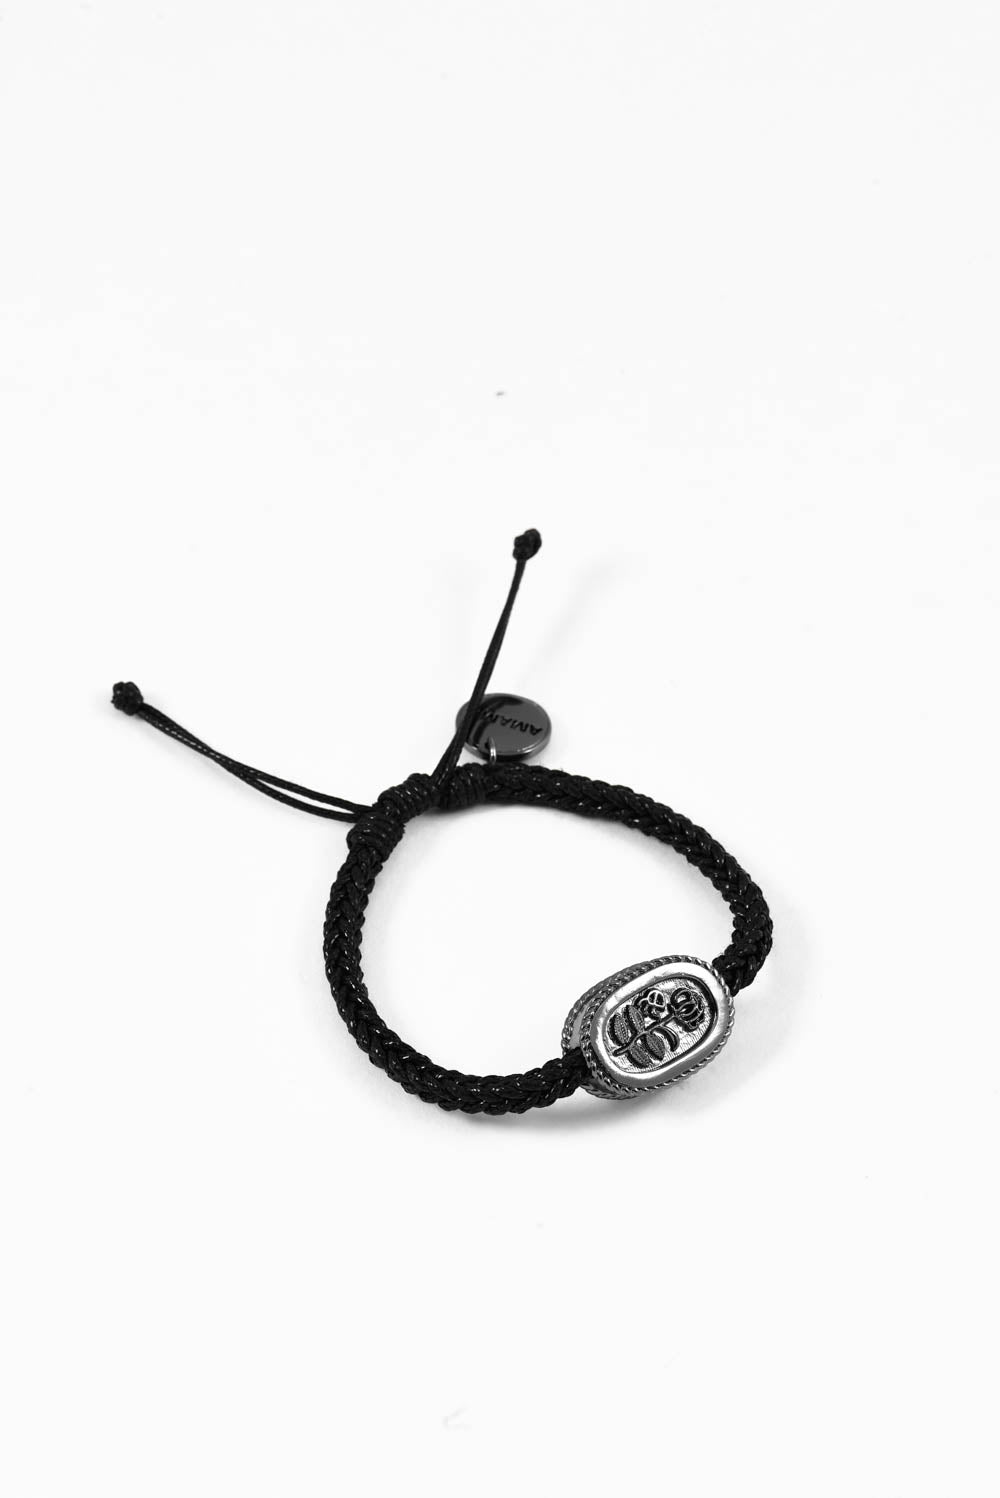 Amama,SubRosa Amulet Bracelet in Charcoal Black